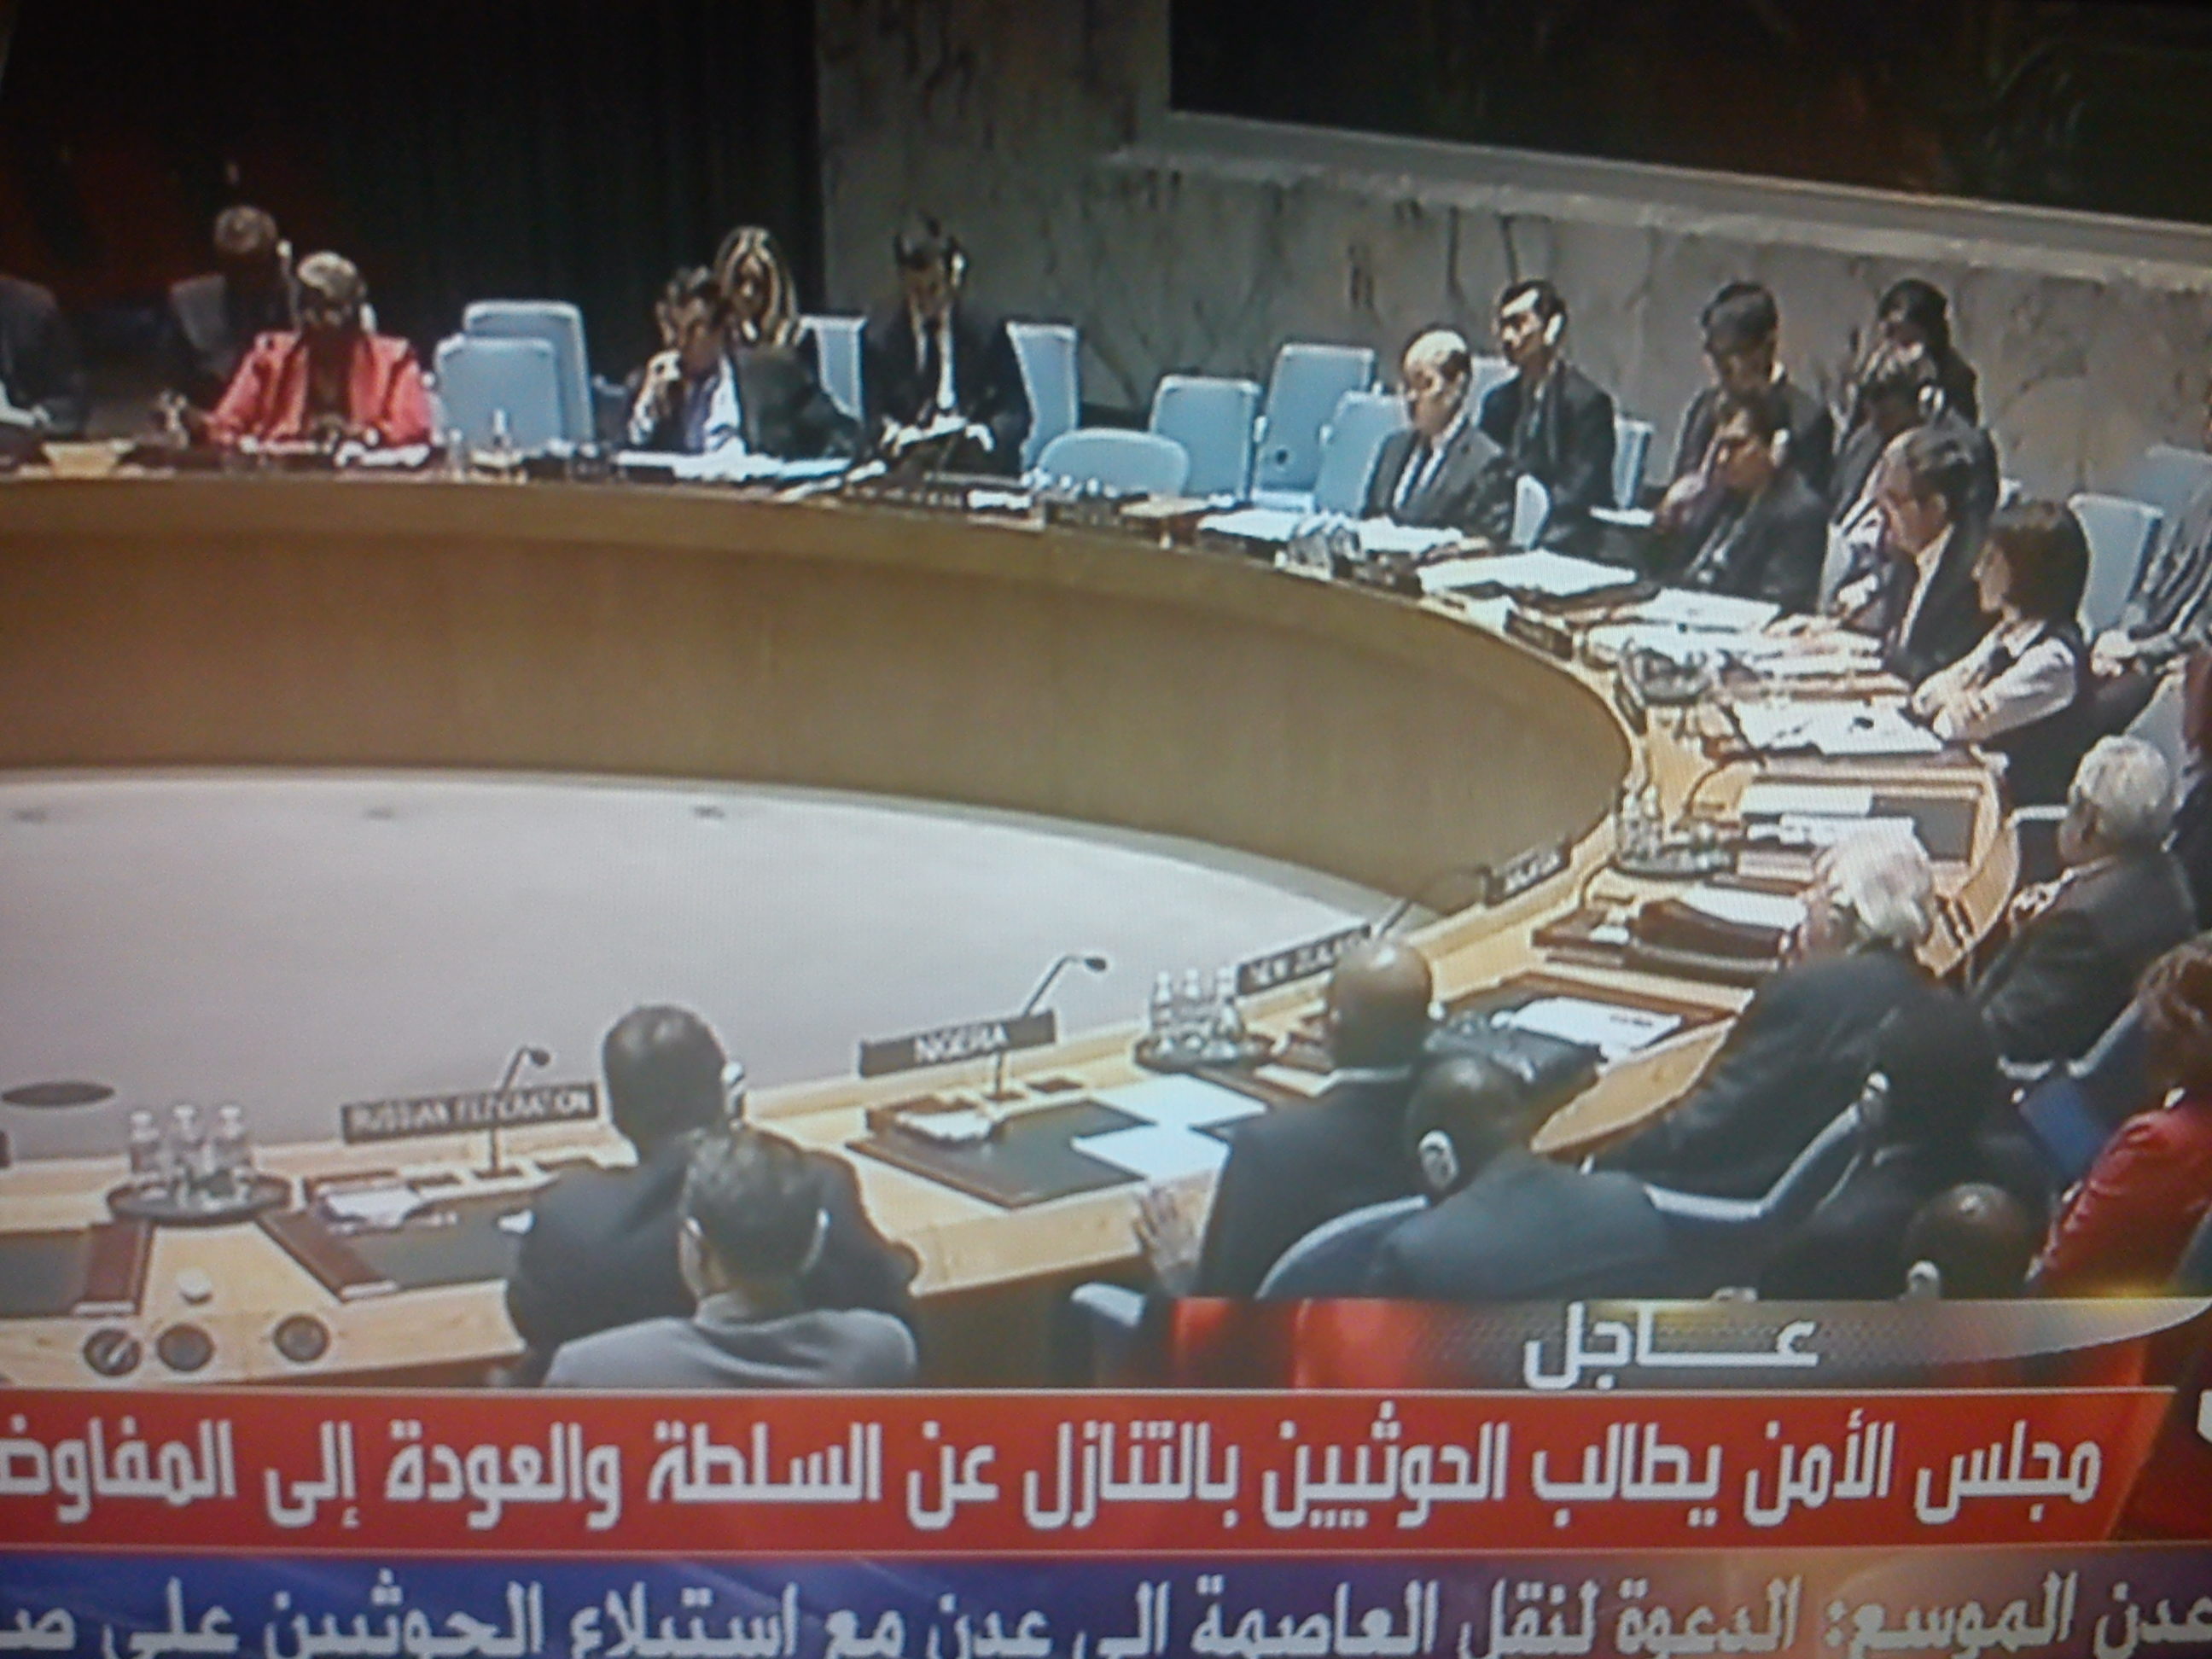 مجلس الأمن يصوت بالإجماع على القرار رقم 2201 بشأن اليمن (أبرز ما ورد القرار)